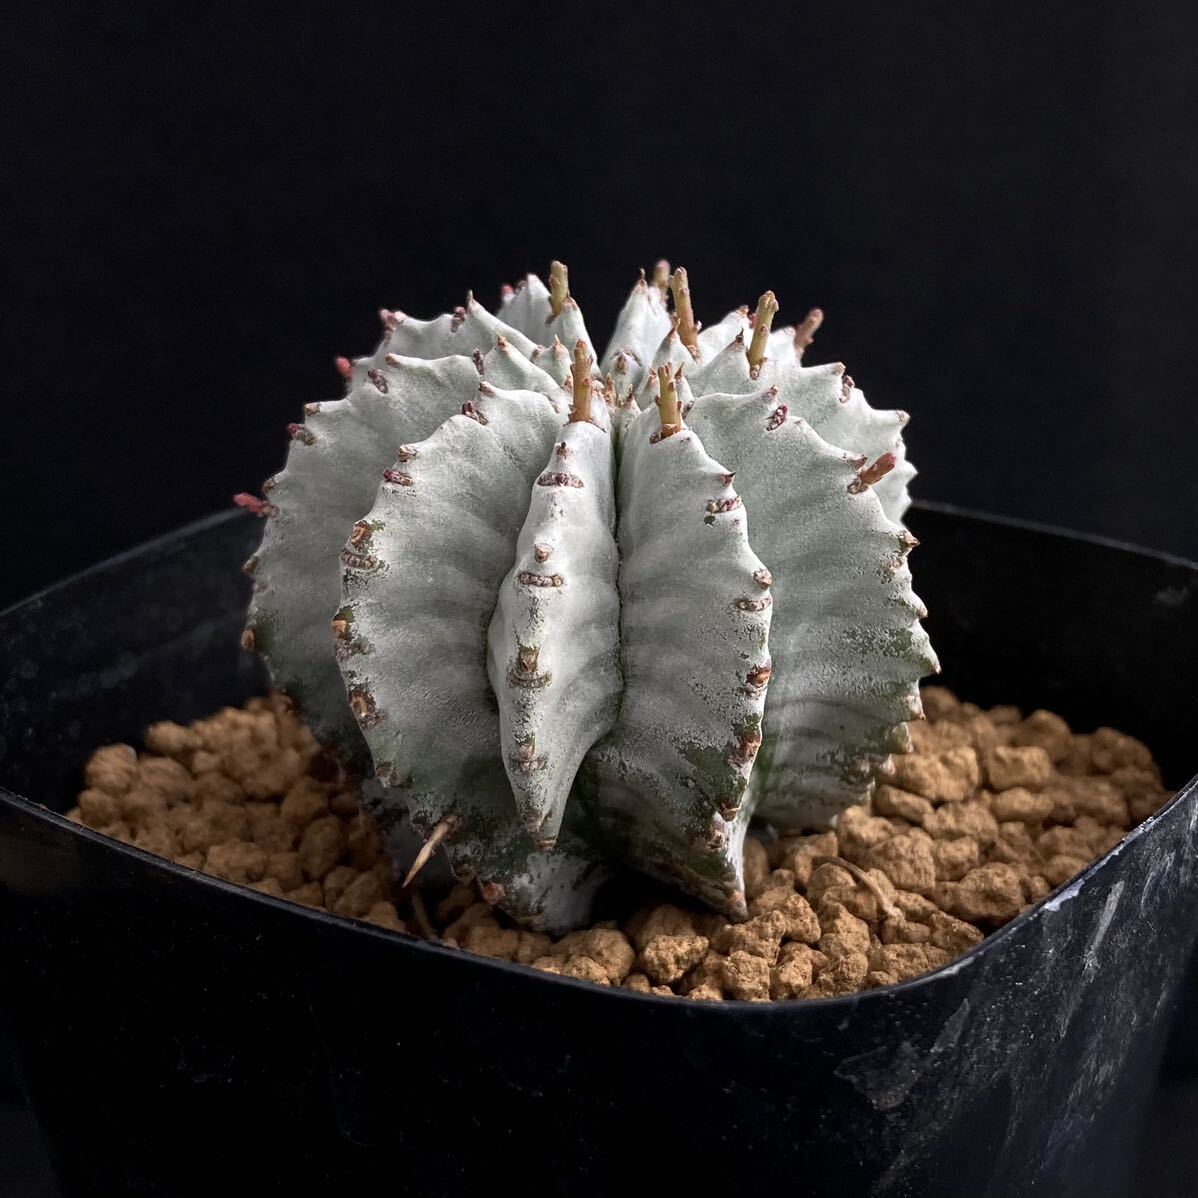 σ You fo ruby a. on white futoshi Hori da*3 number first reference image Euphorbia horrida[ Hori dasimpa] succulent plant cactus pakipotiumko Piaa poa